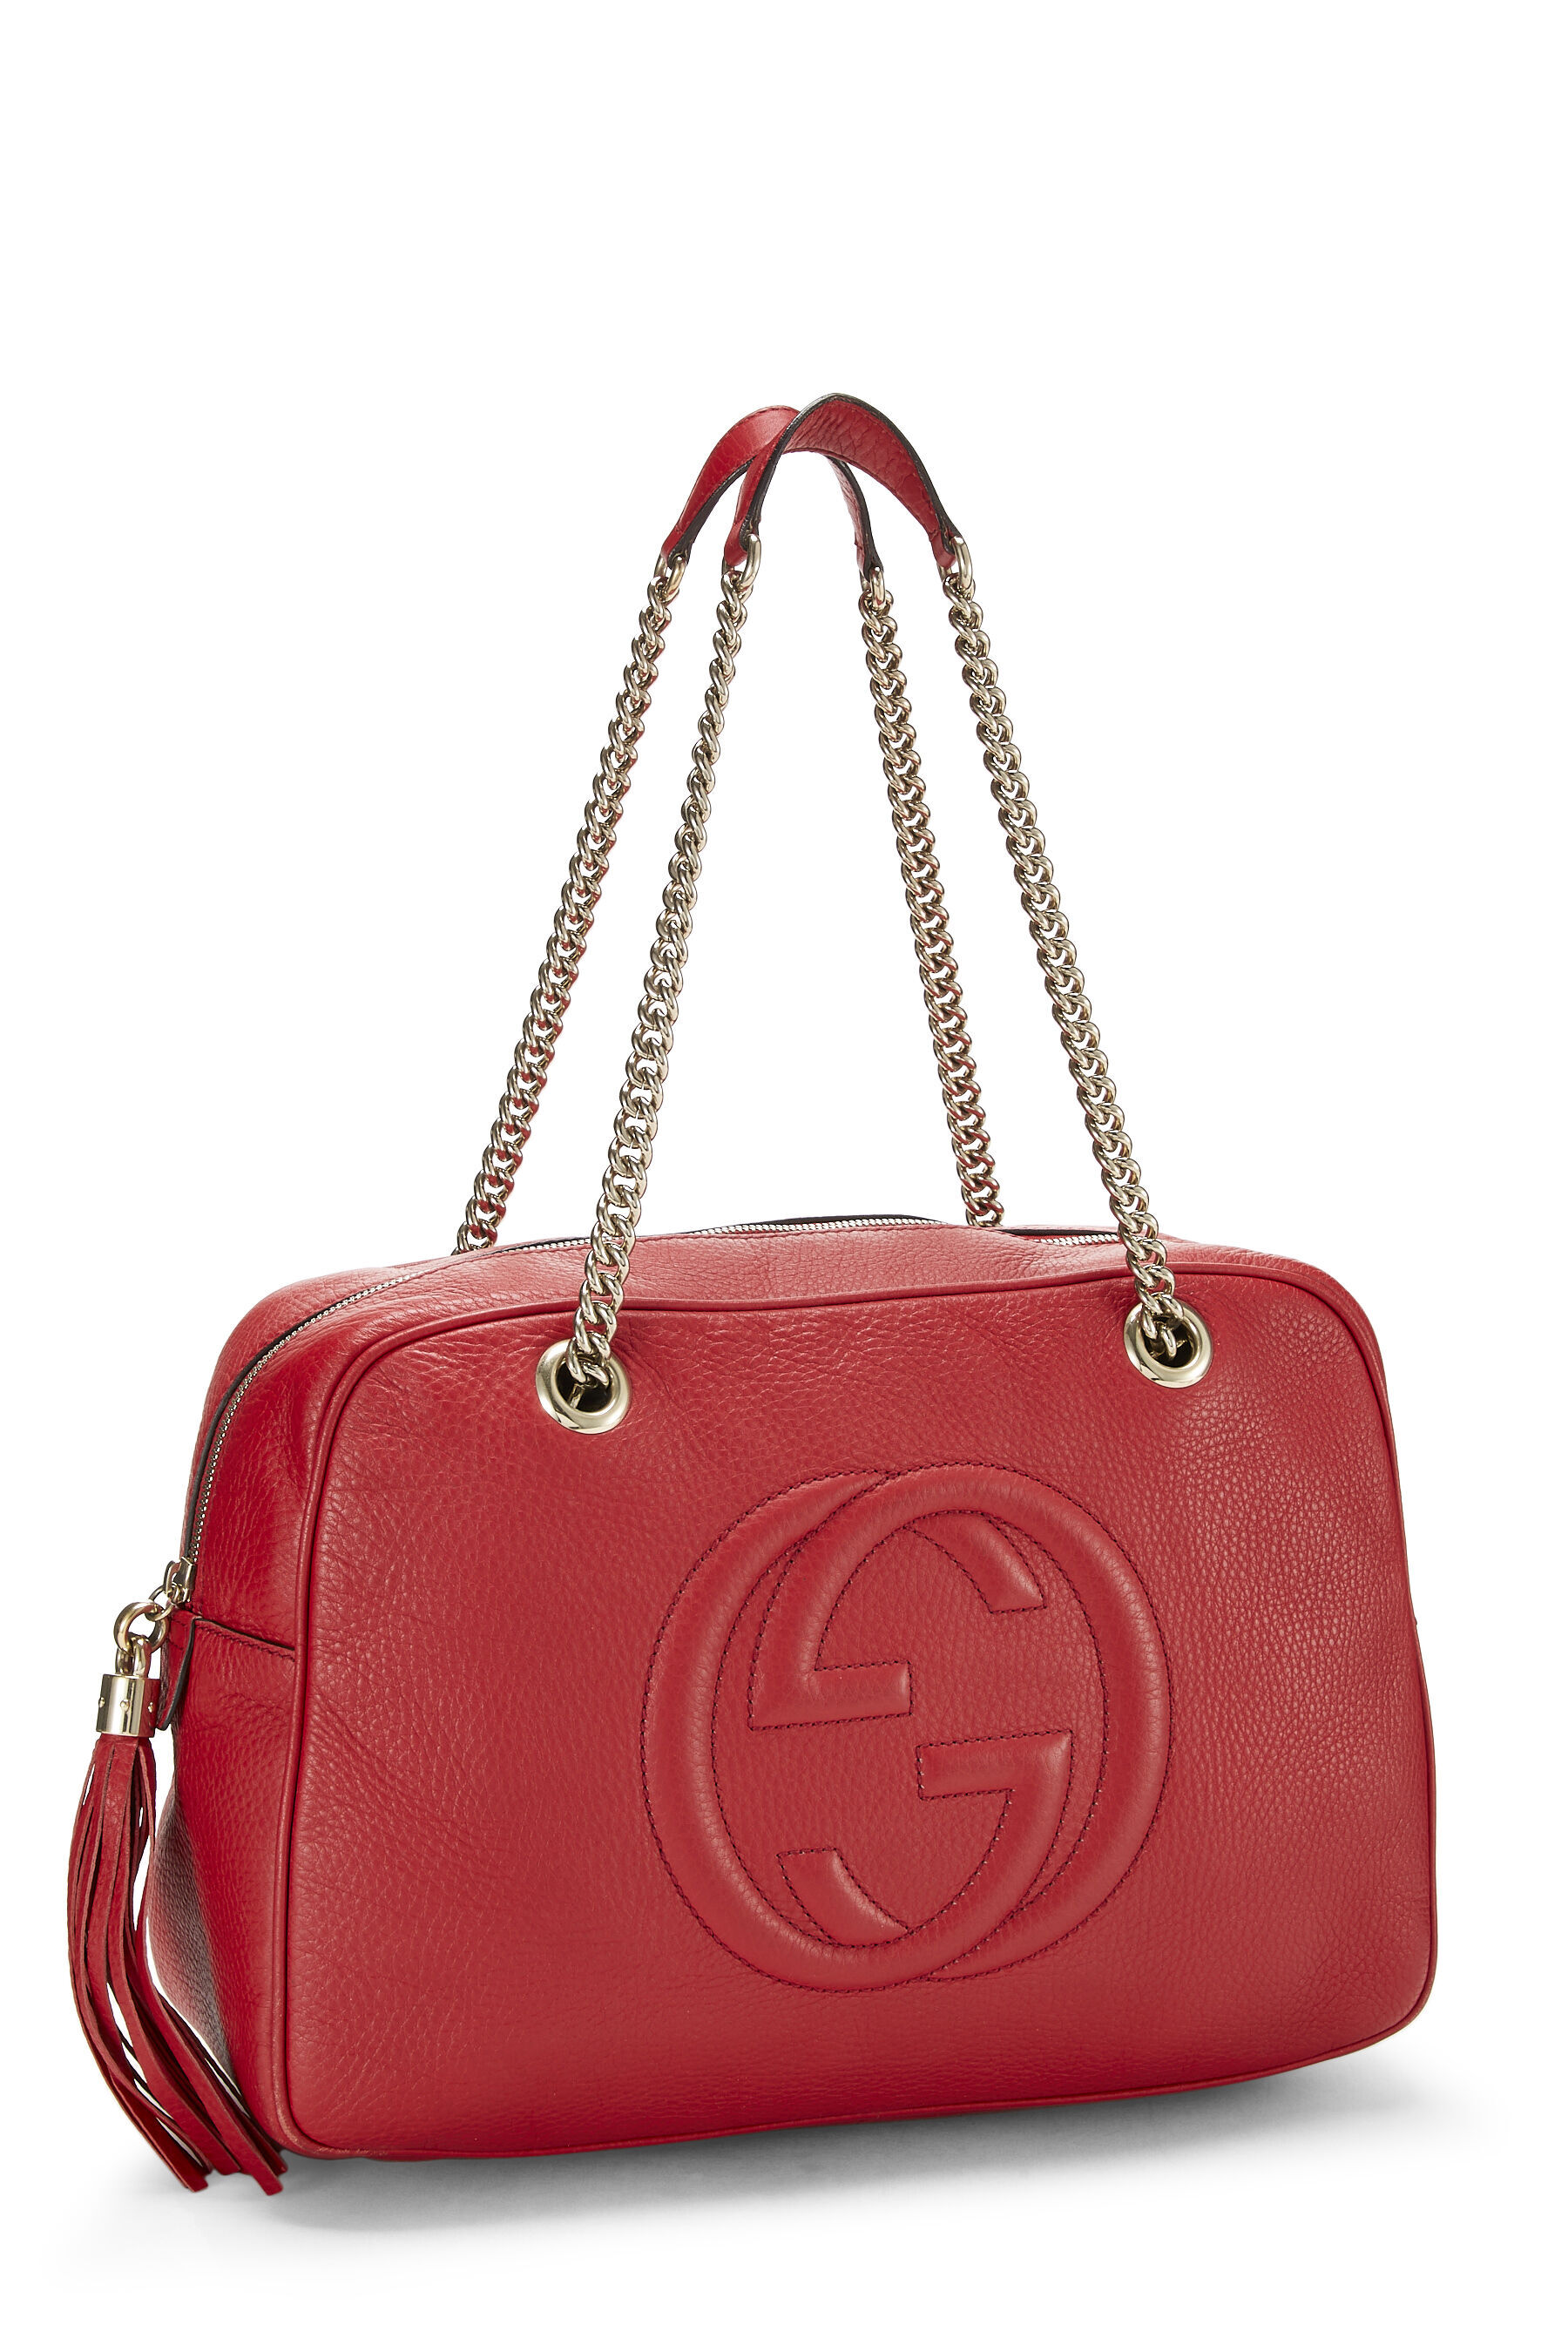 YUCCA brand Red Leather Hobo Bag Shoulder Purse bucket pockets Dust bag |  eBay